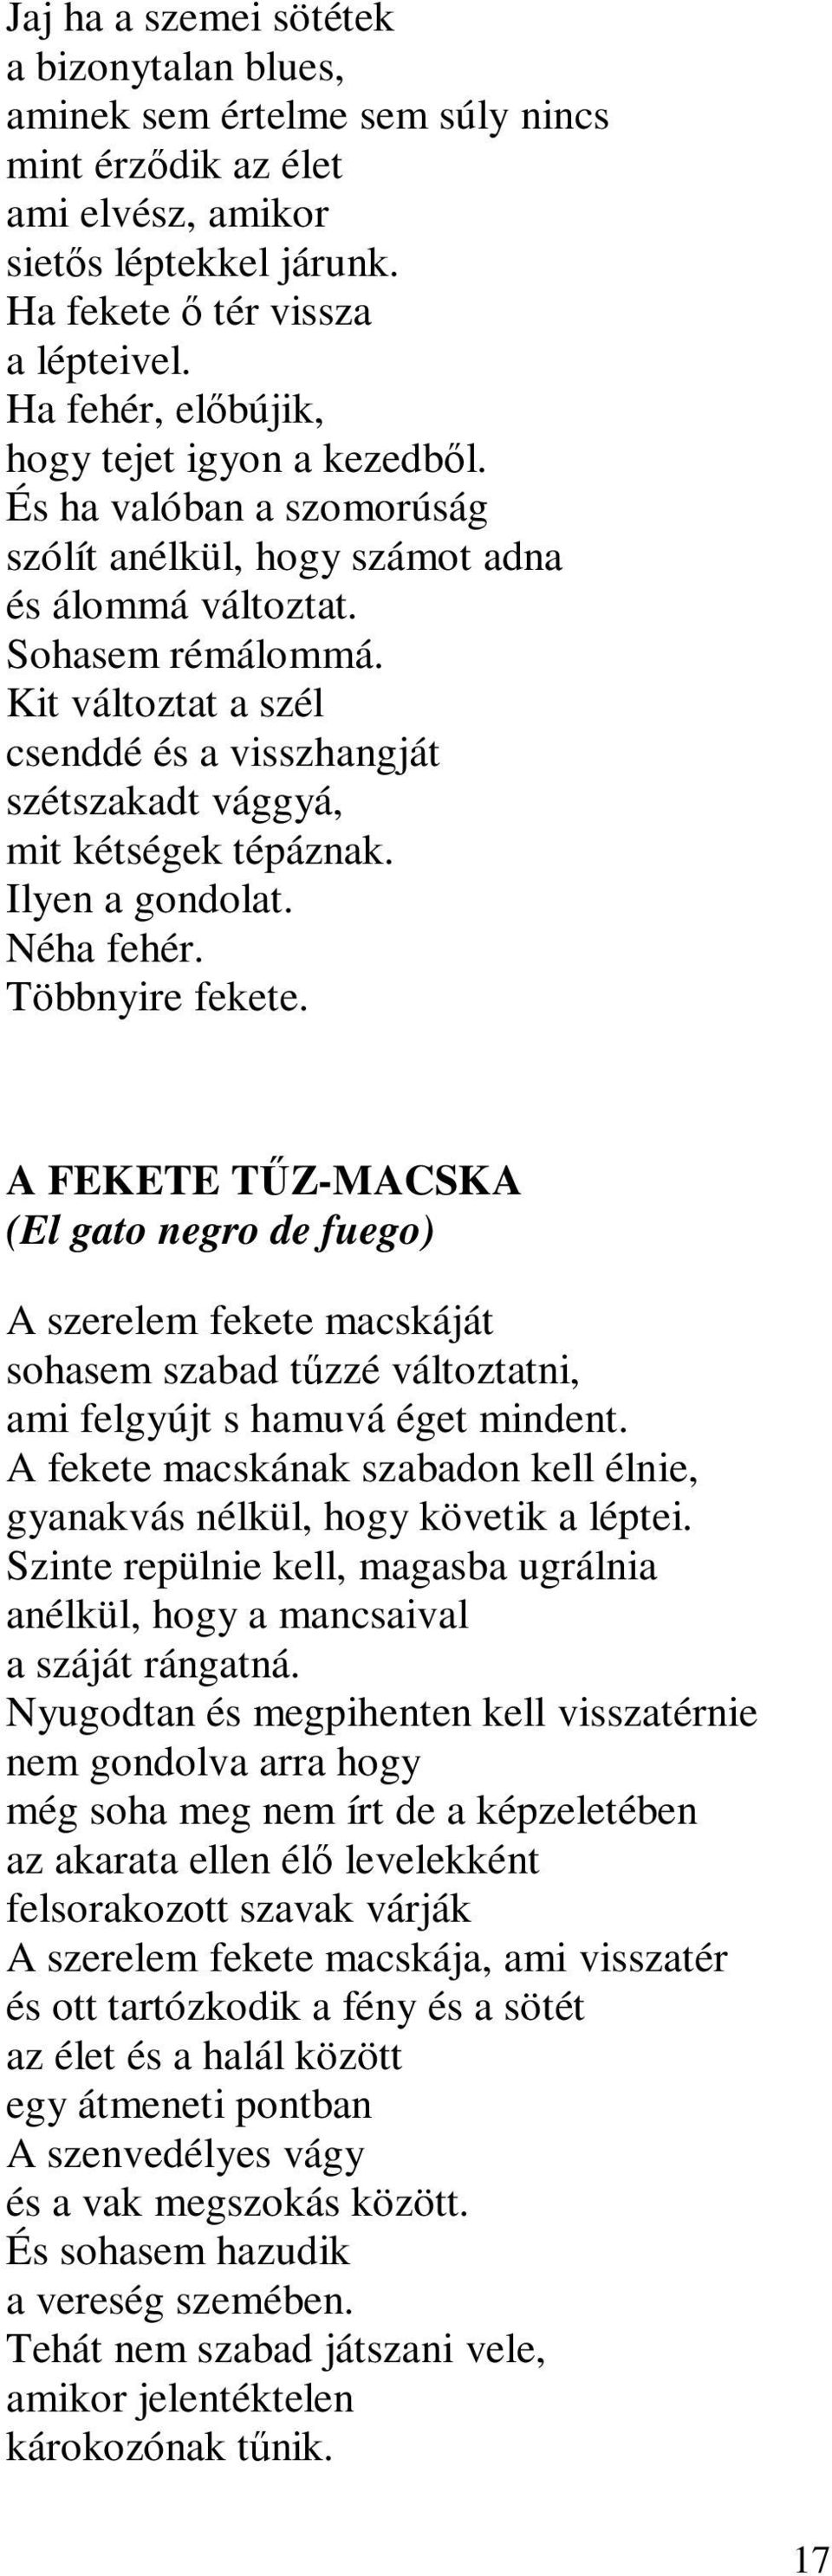 A SZERELEM FEKETE MACSKÁJA - PDF Ingyenes letöltés